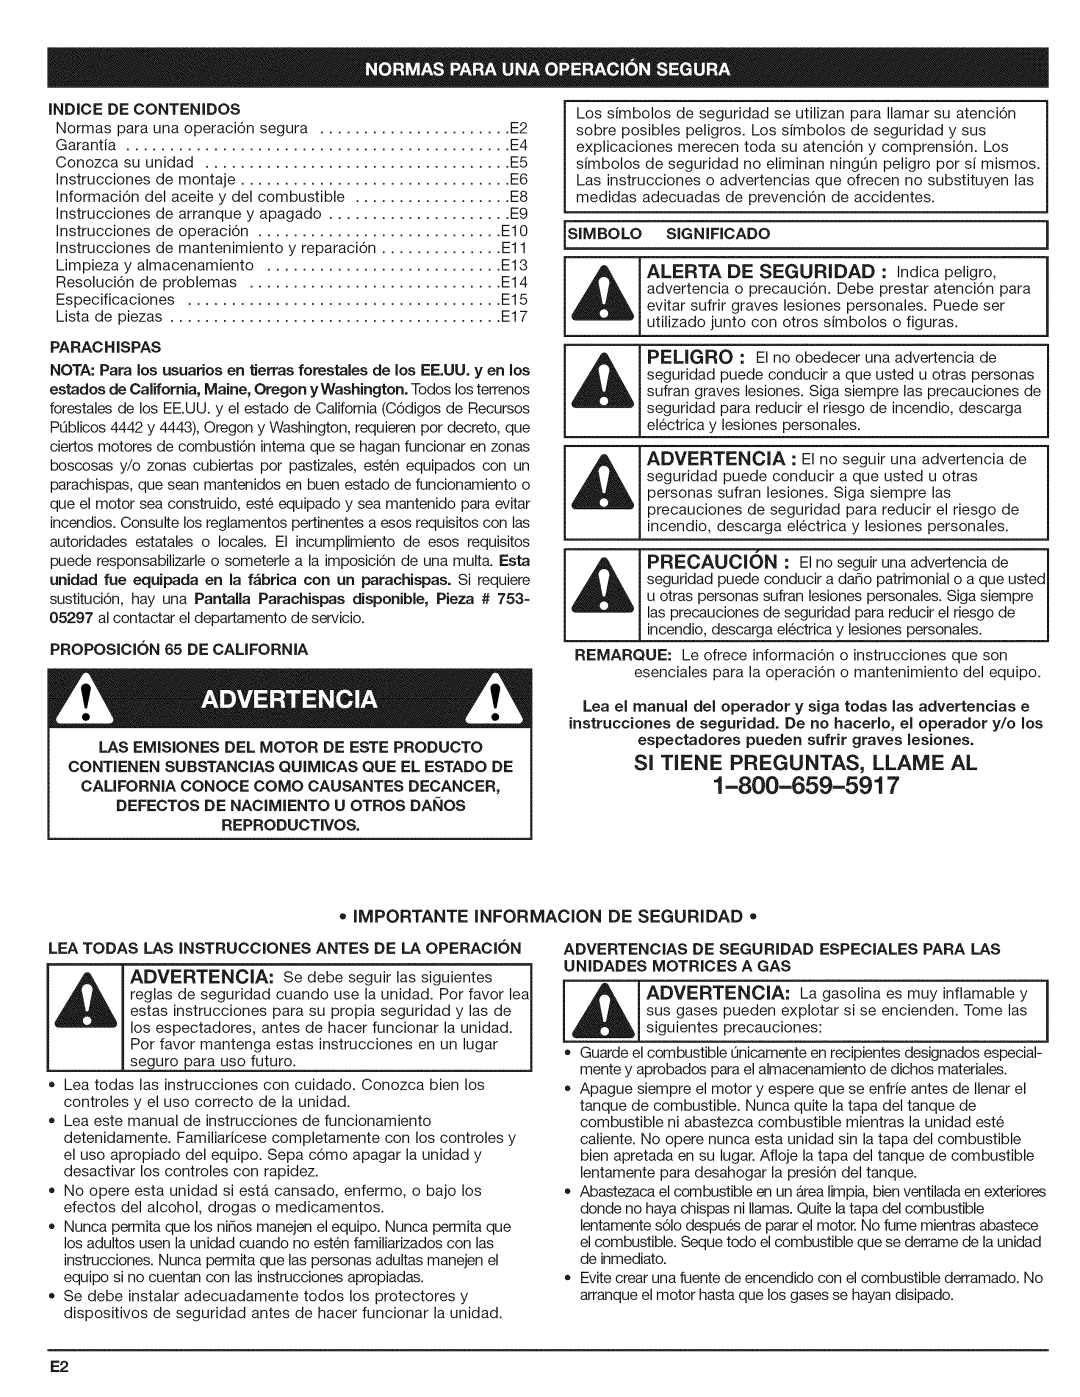 Craftsman 316.794801 manual ALERTA DE SEGURIDAD : Jndica peligro, • Importante Informacion De Seguridad •, Advertencia 